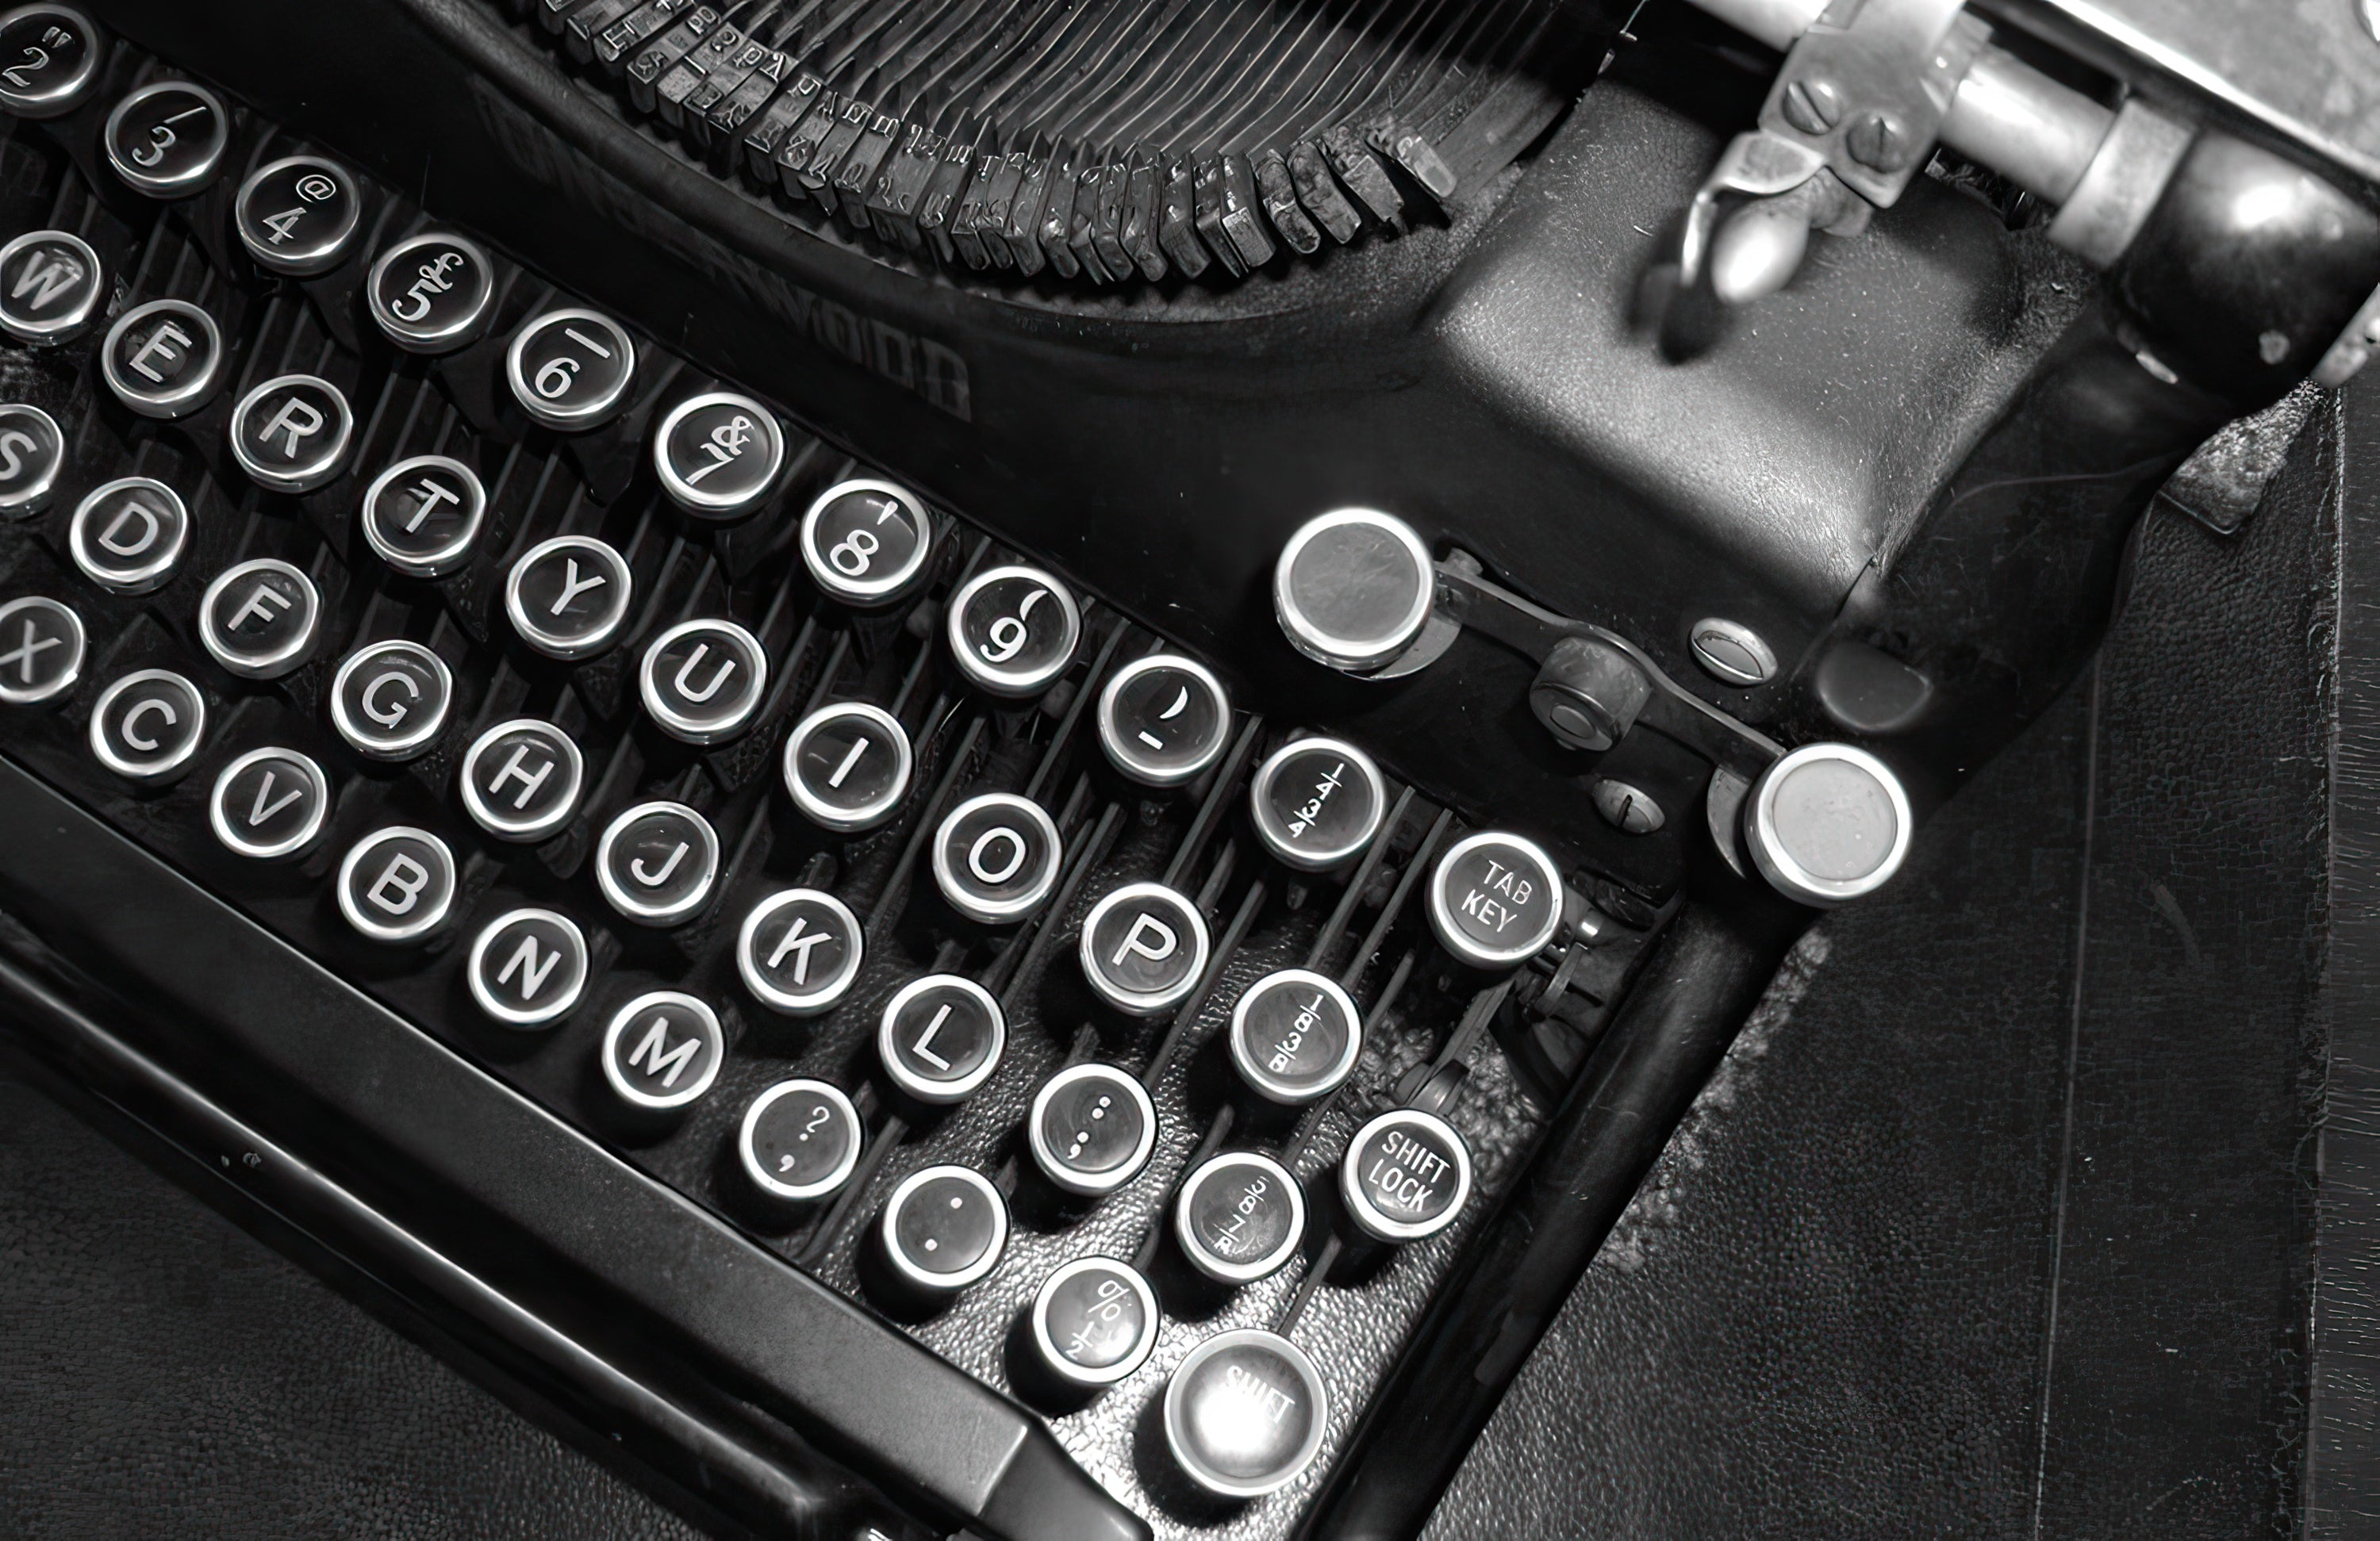 2018 Adapted Story Showcase - Image of Vintage Typewriter